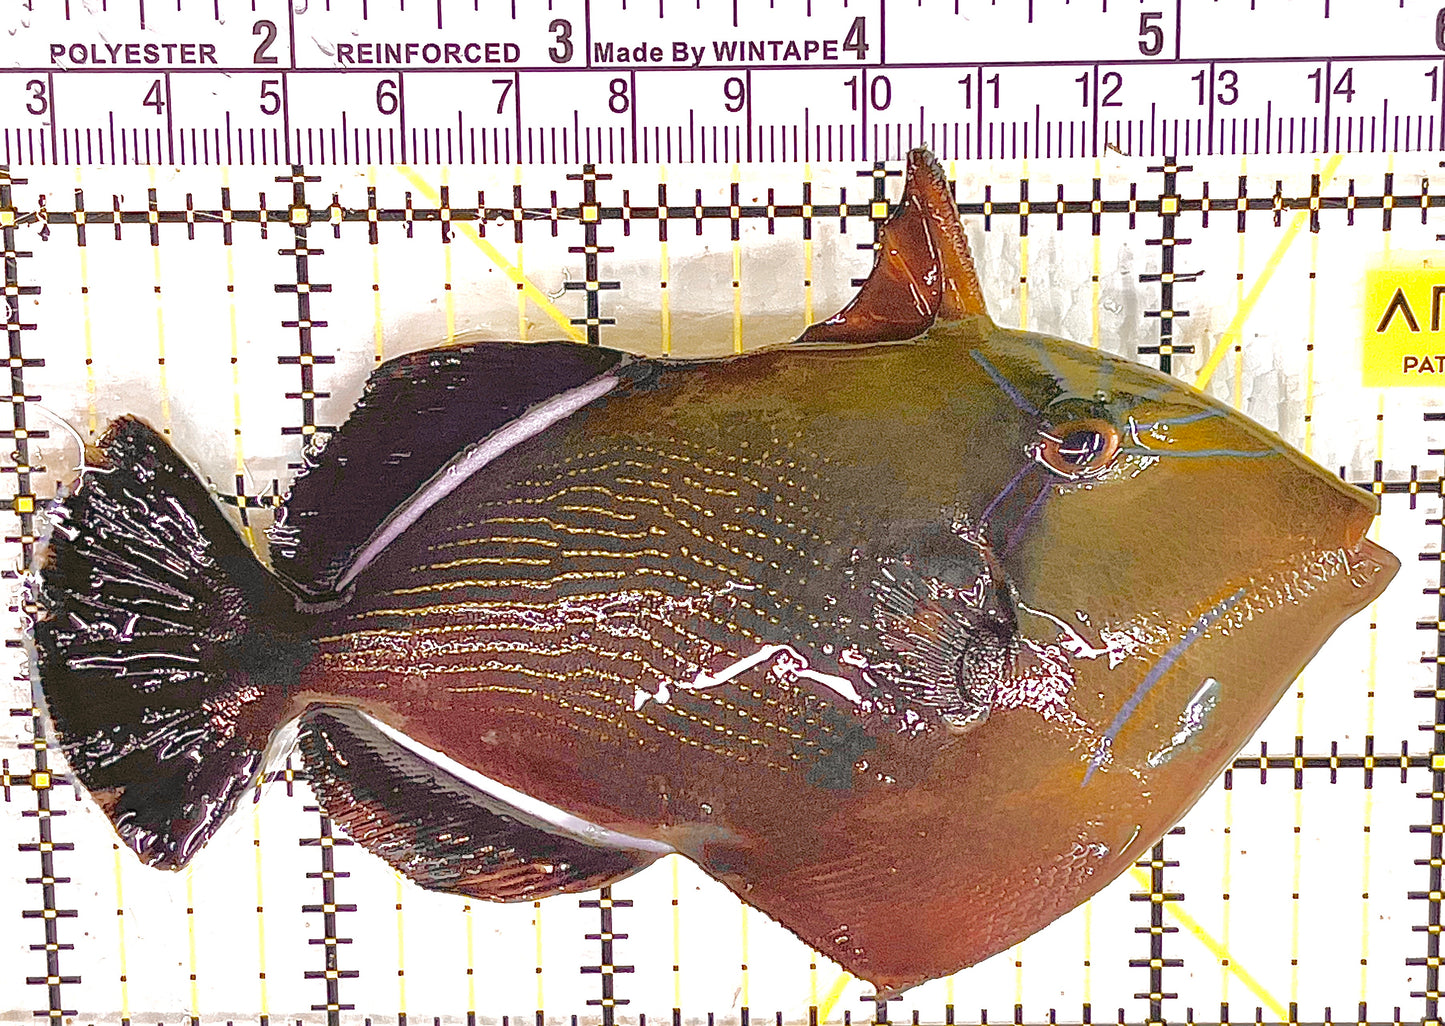 Black Triggerfish BT041302 WYSIWYG Size: XL 5" approx